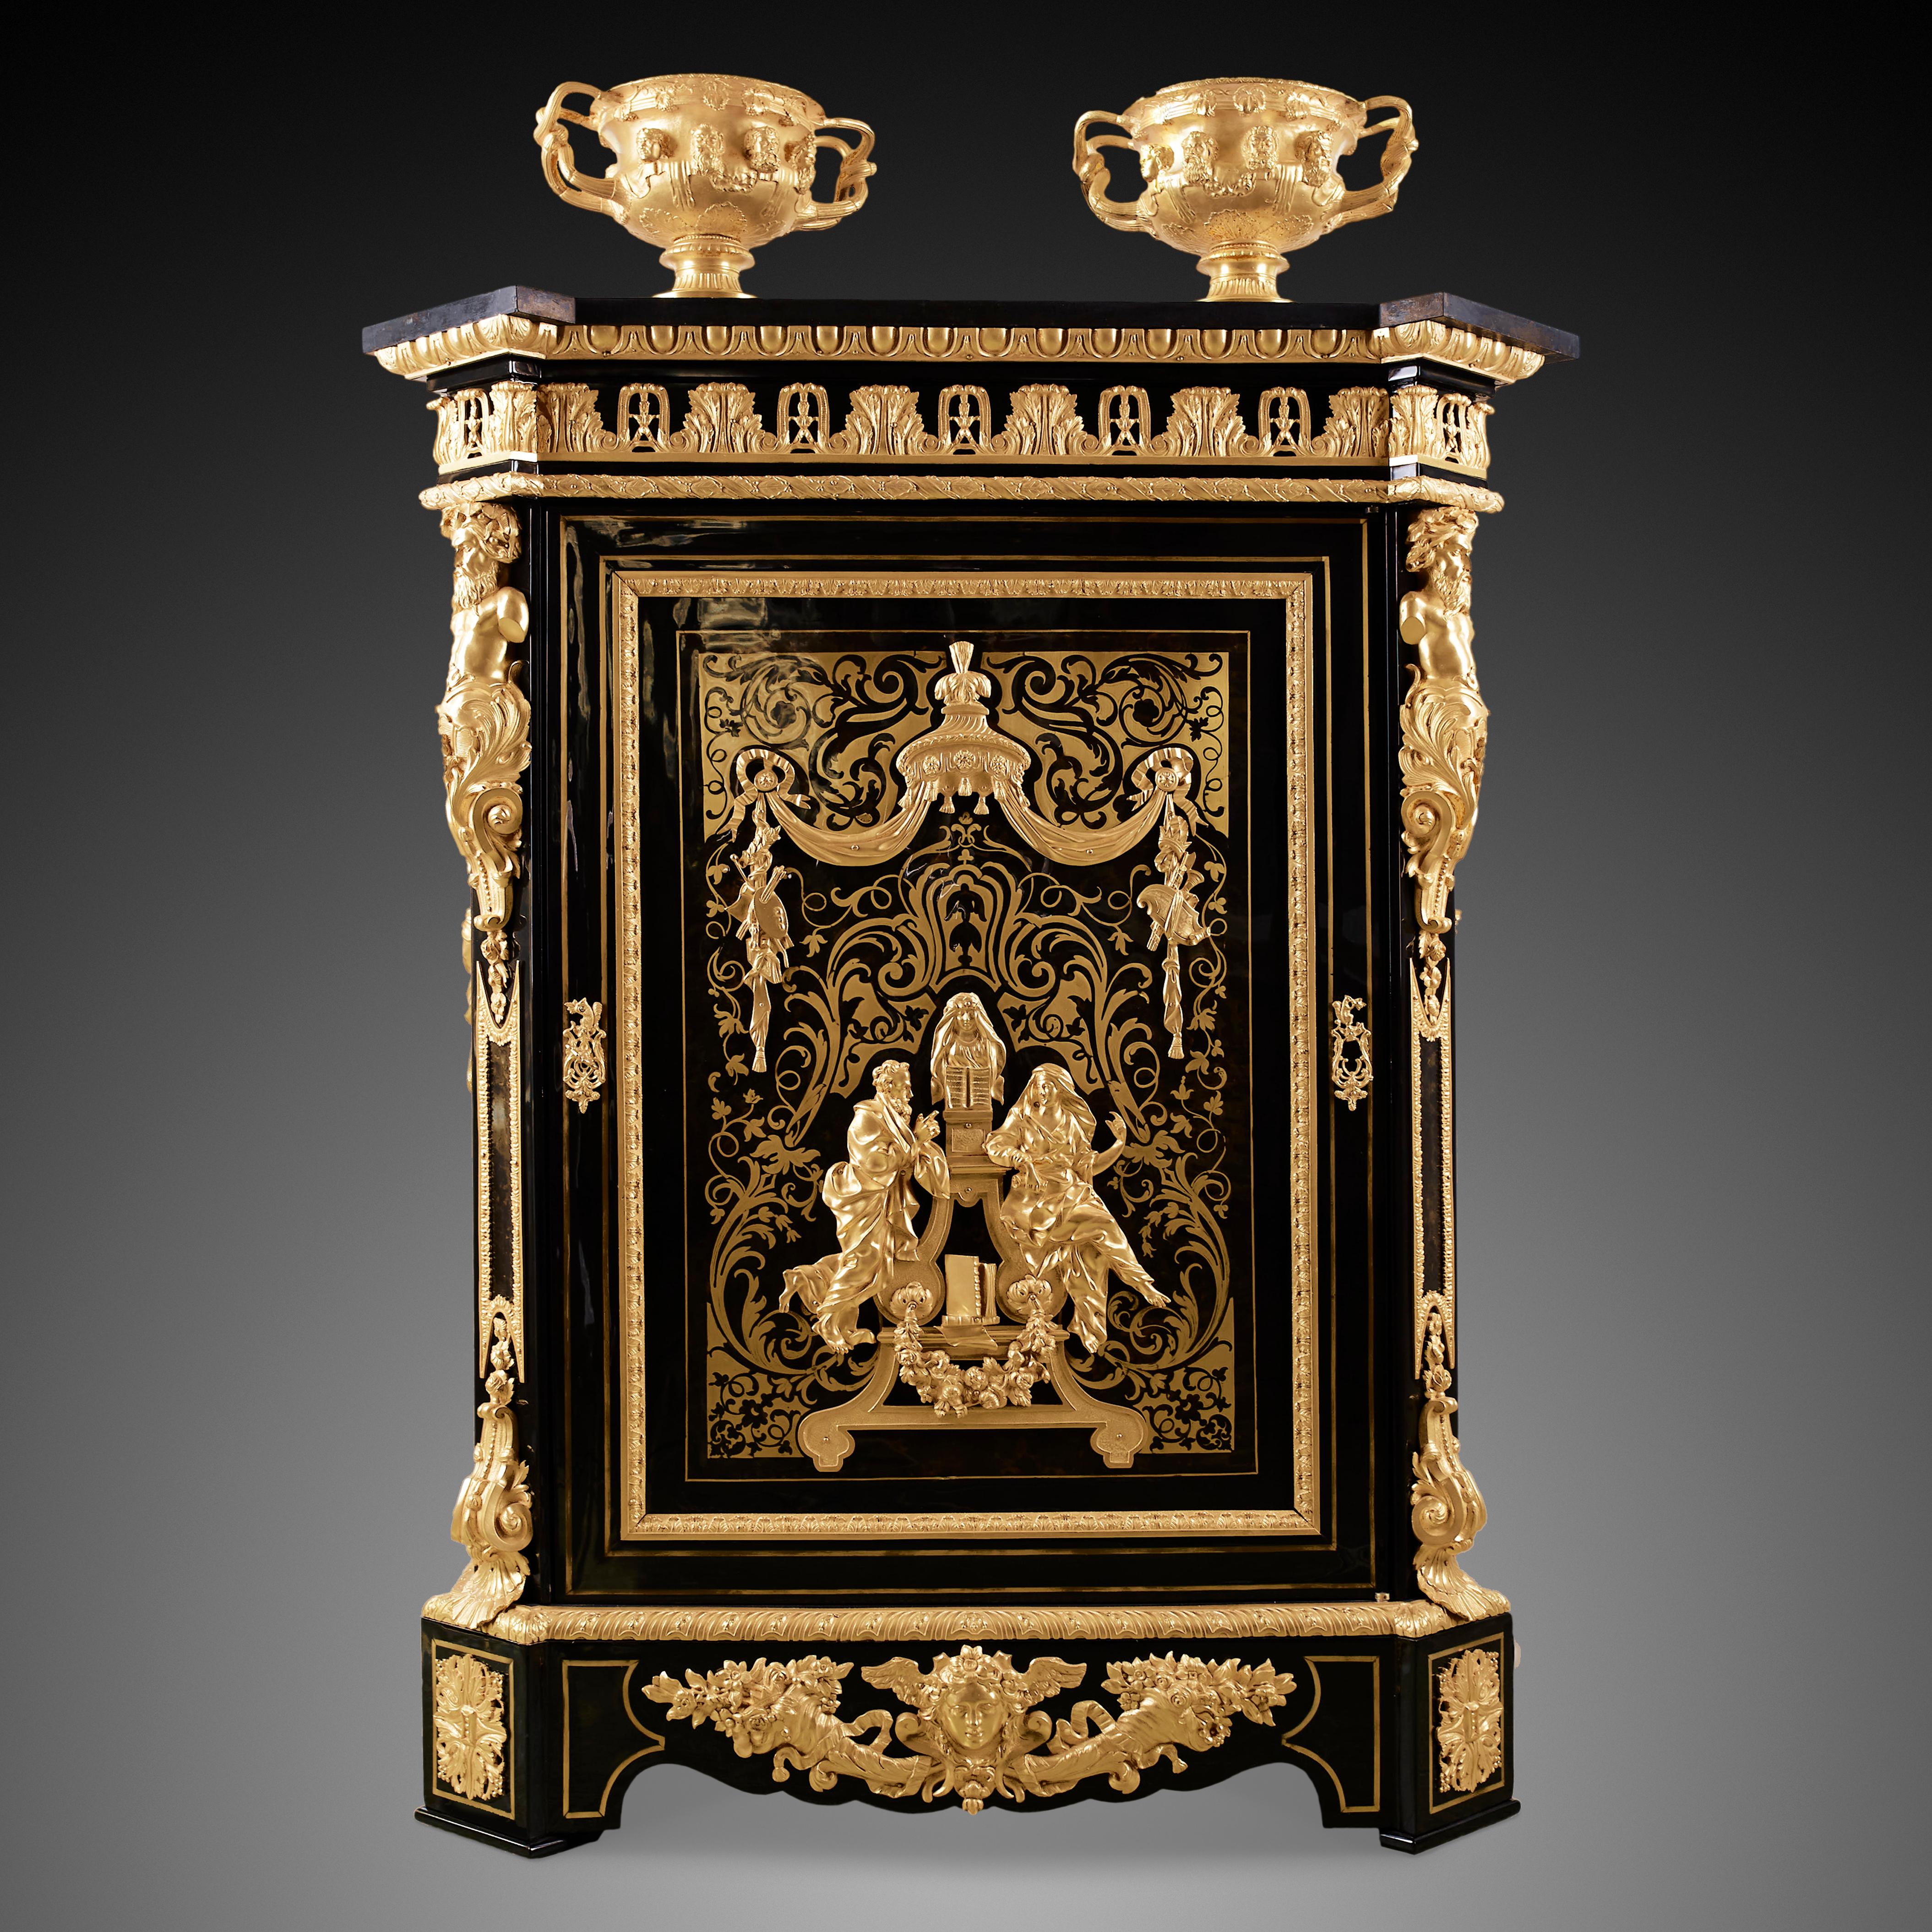 Ce cabinet de style Napoléon III est fait de bois noir poli, monté de bronze doré, incrusté de laiton et surmonté d'une plaque de marbre noir belge. Le style Napoléon III, nommé d'après Louis-Napoléon Bonaparte, l'empereur français qui a régné de